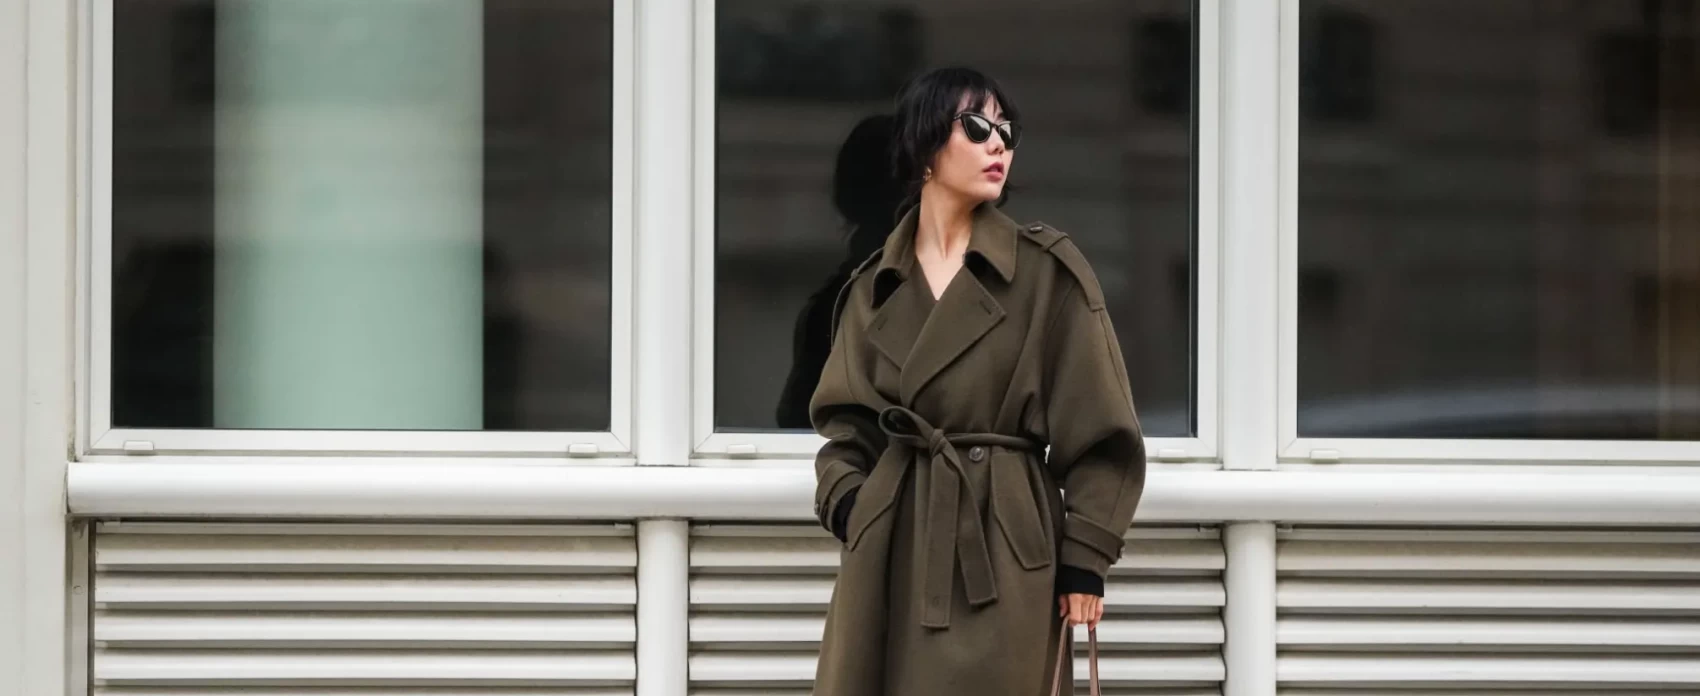  Xiayan wearing trench coat at Paris fashion week 